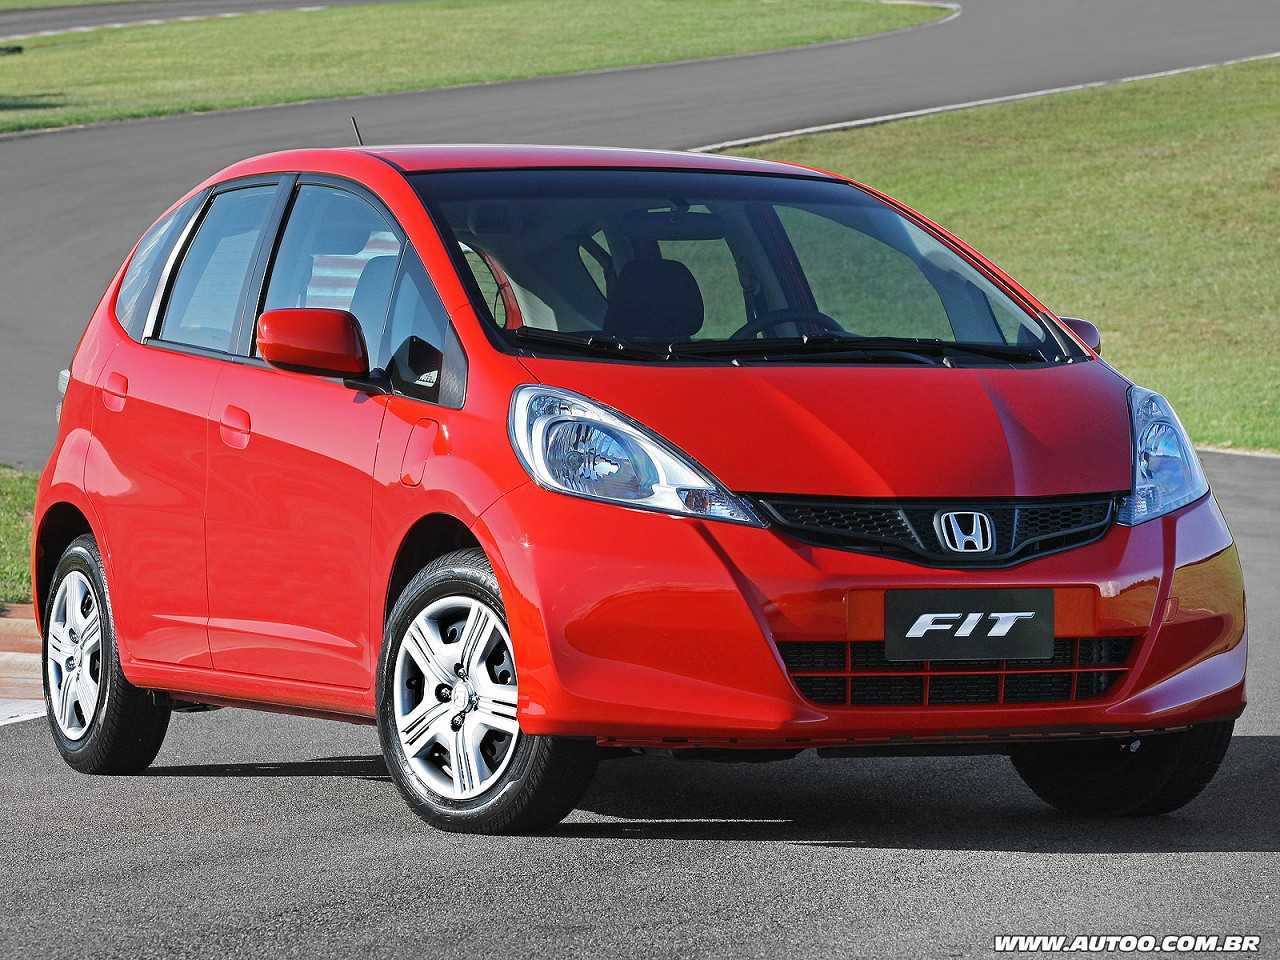 Carro usado até R$ 30.000: um Nissan Tiida ou um Honda Fit?